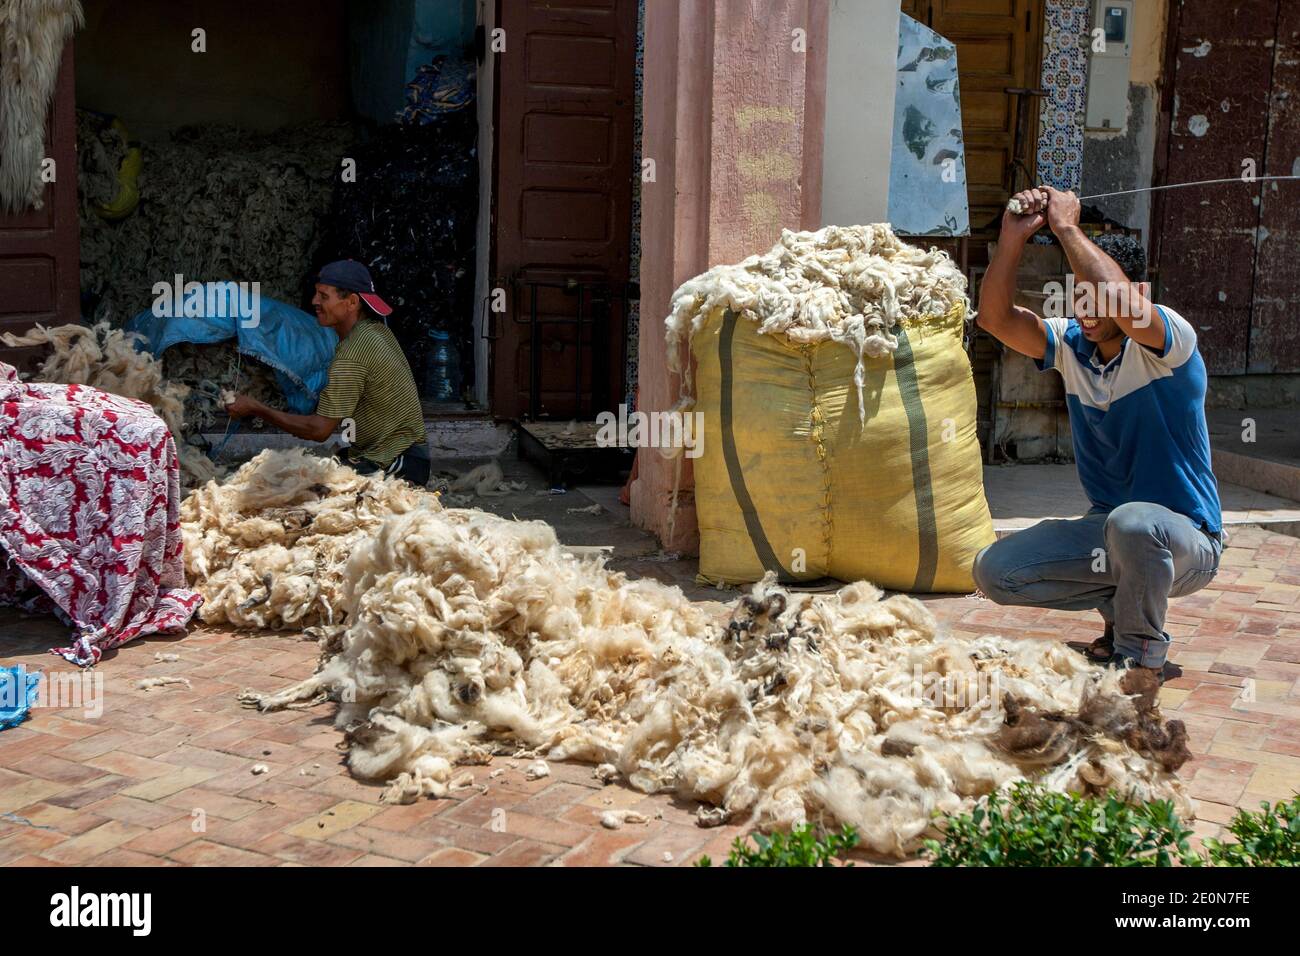 Un uomo batte un mucchio di lana con una barra di metallo per rimuovere le impurità prima che la lana sia imballata in balle ad un commercio a Meknes, Marocco. Foto Stock